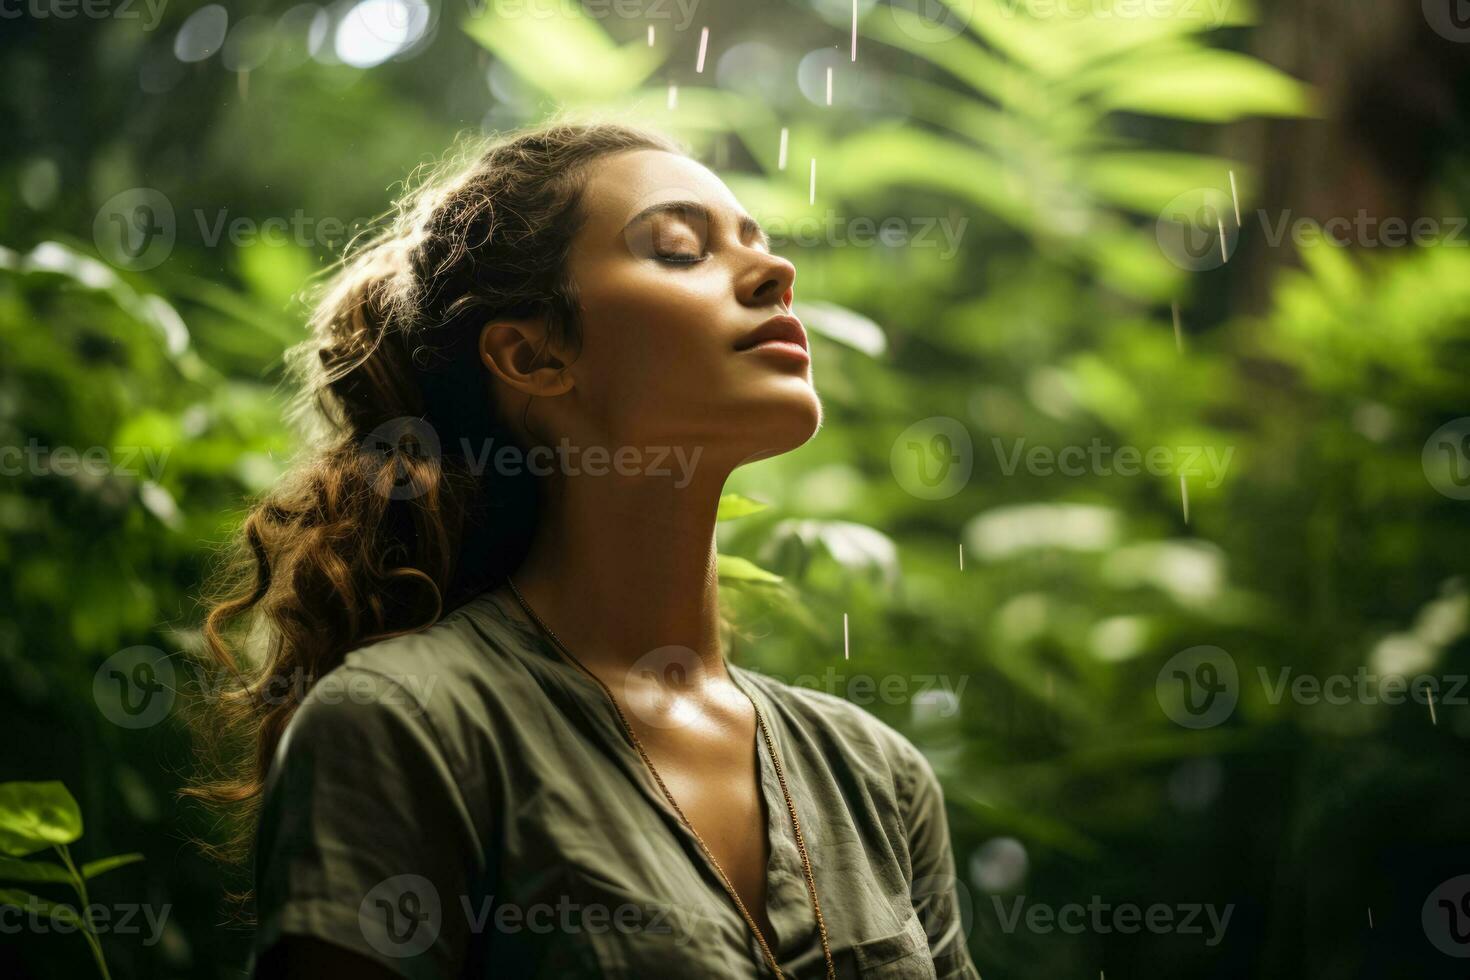 onder een luifel van bladeren een persoon praktijken bedachtzaam ademen gevoel de van de aarde energie een verbinding naar natuur voor wereld mentaal Gezondheid dag foto